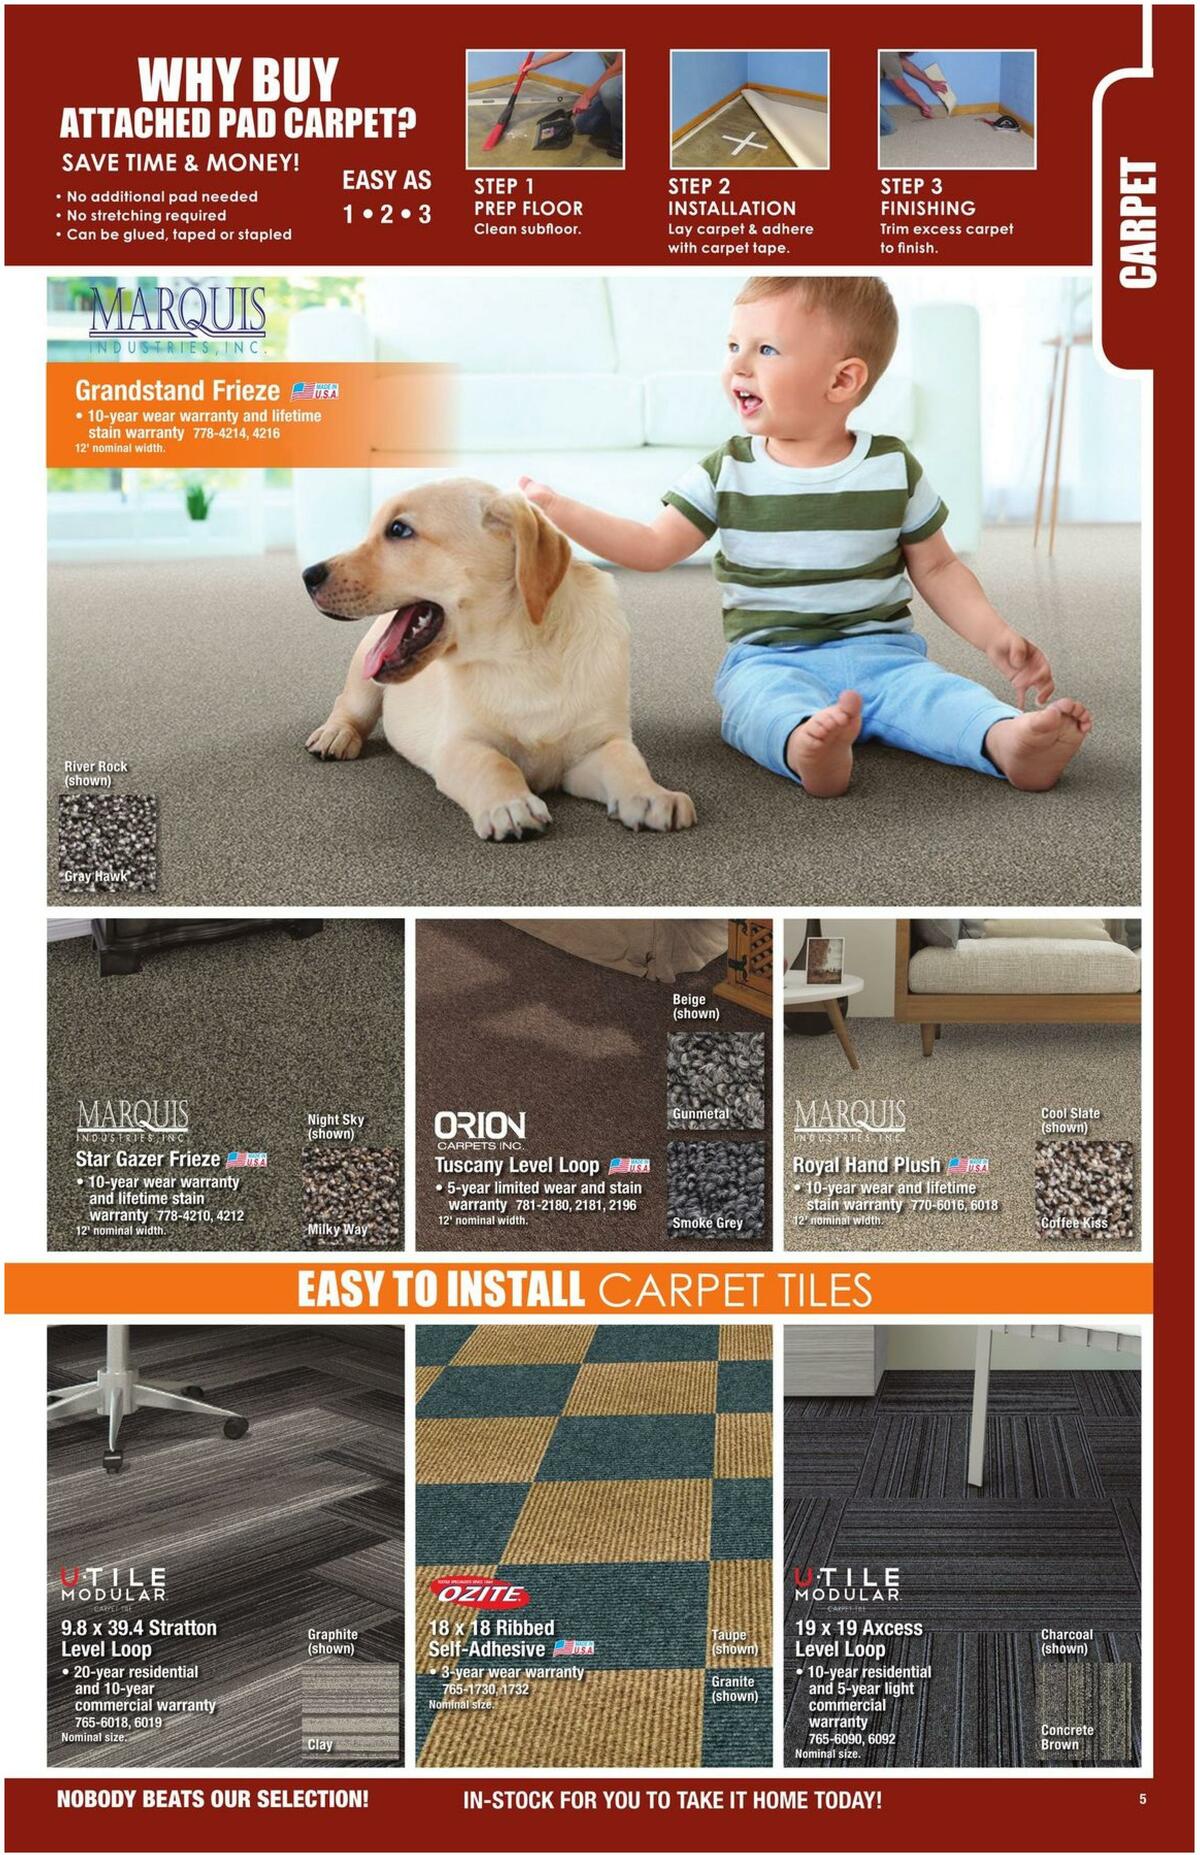 Menards Flooring Catalog 2021 Weekly Ad from December 28